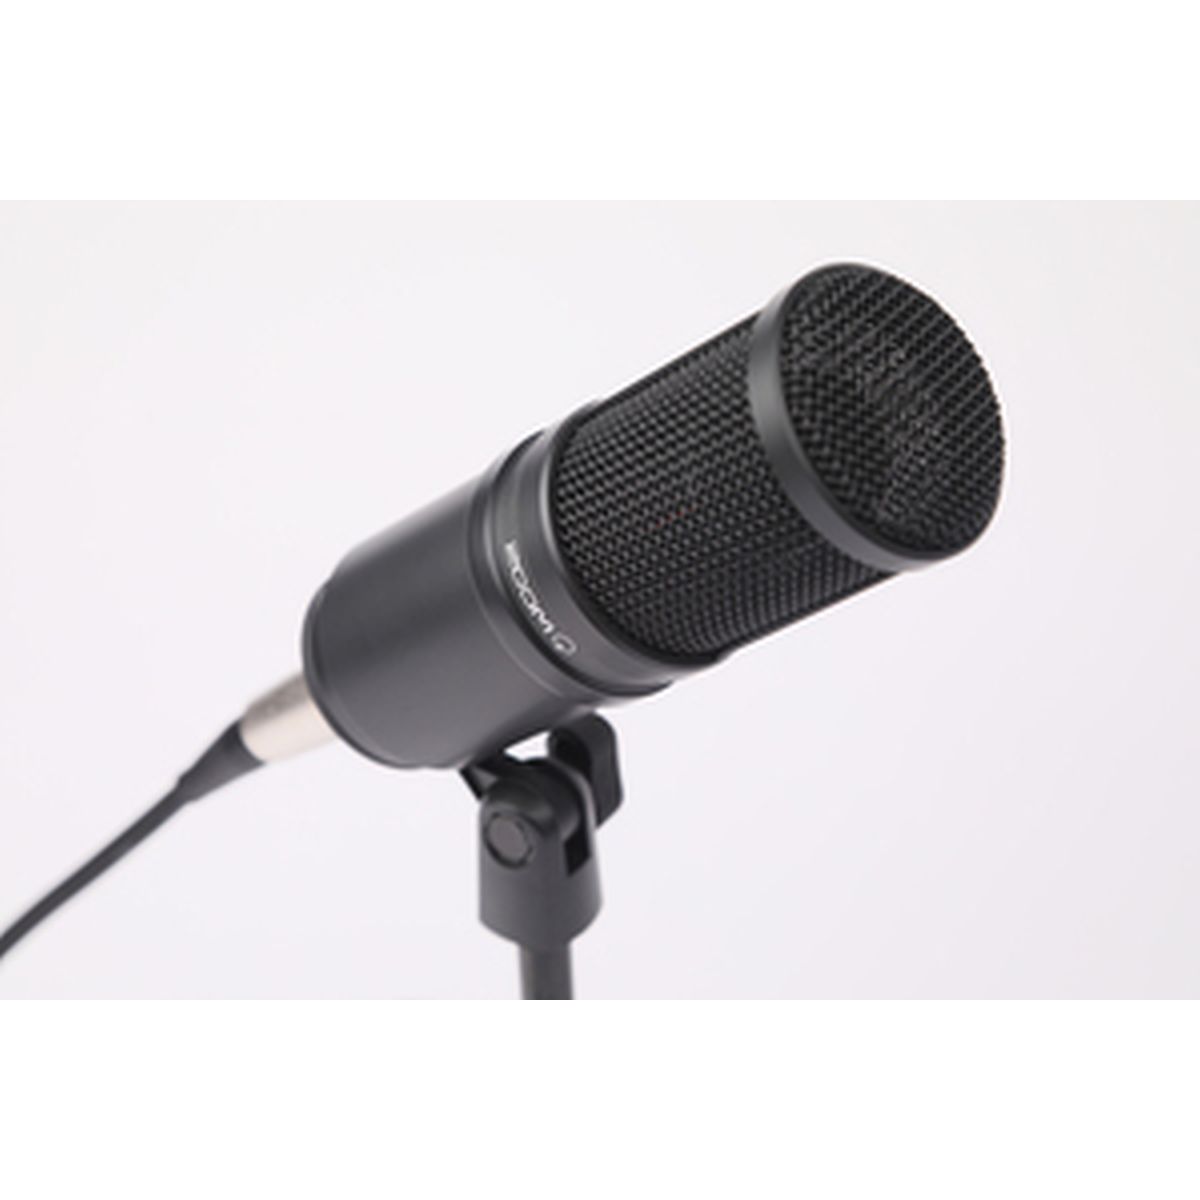 Zoom ZDM-1PMP Podcast Mic Pack Mikrofon-Kit